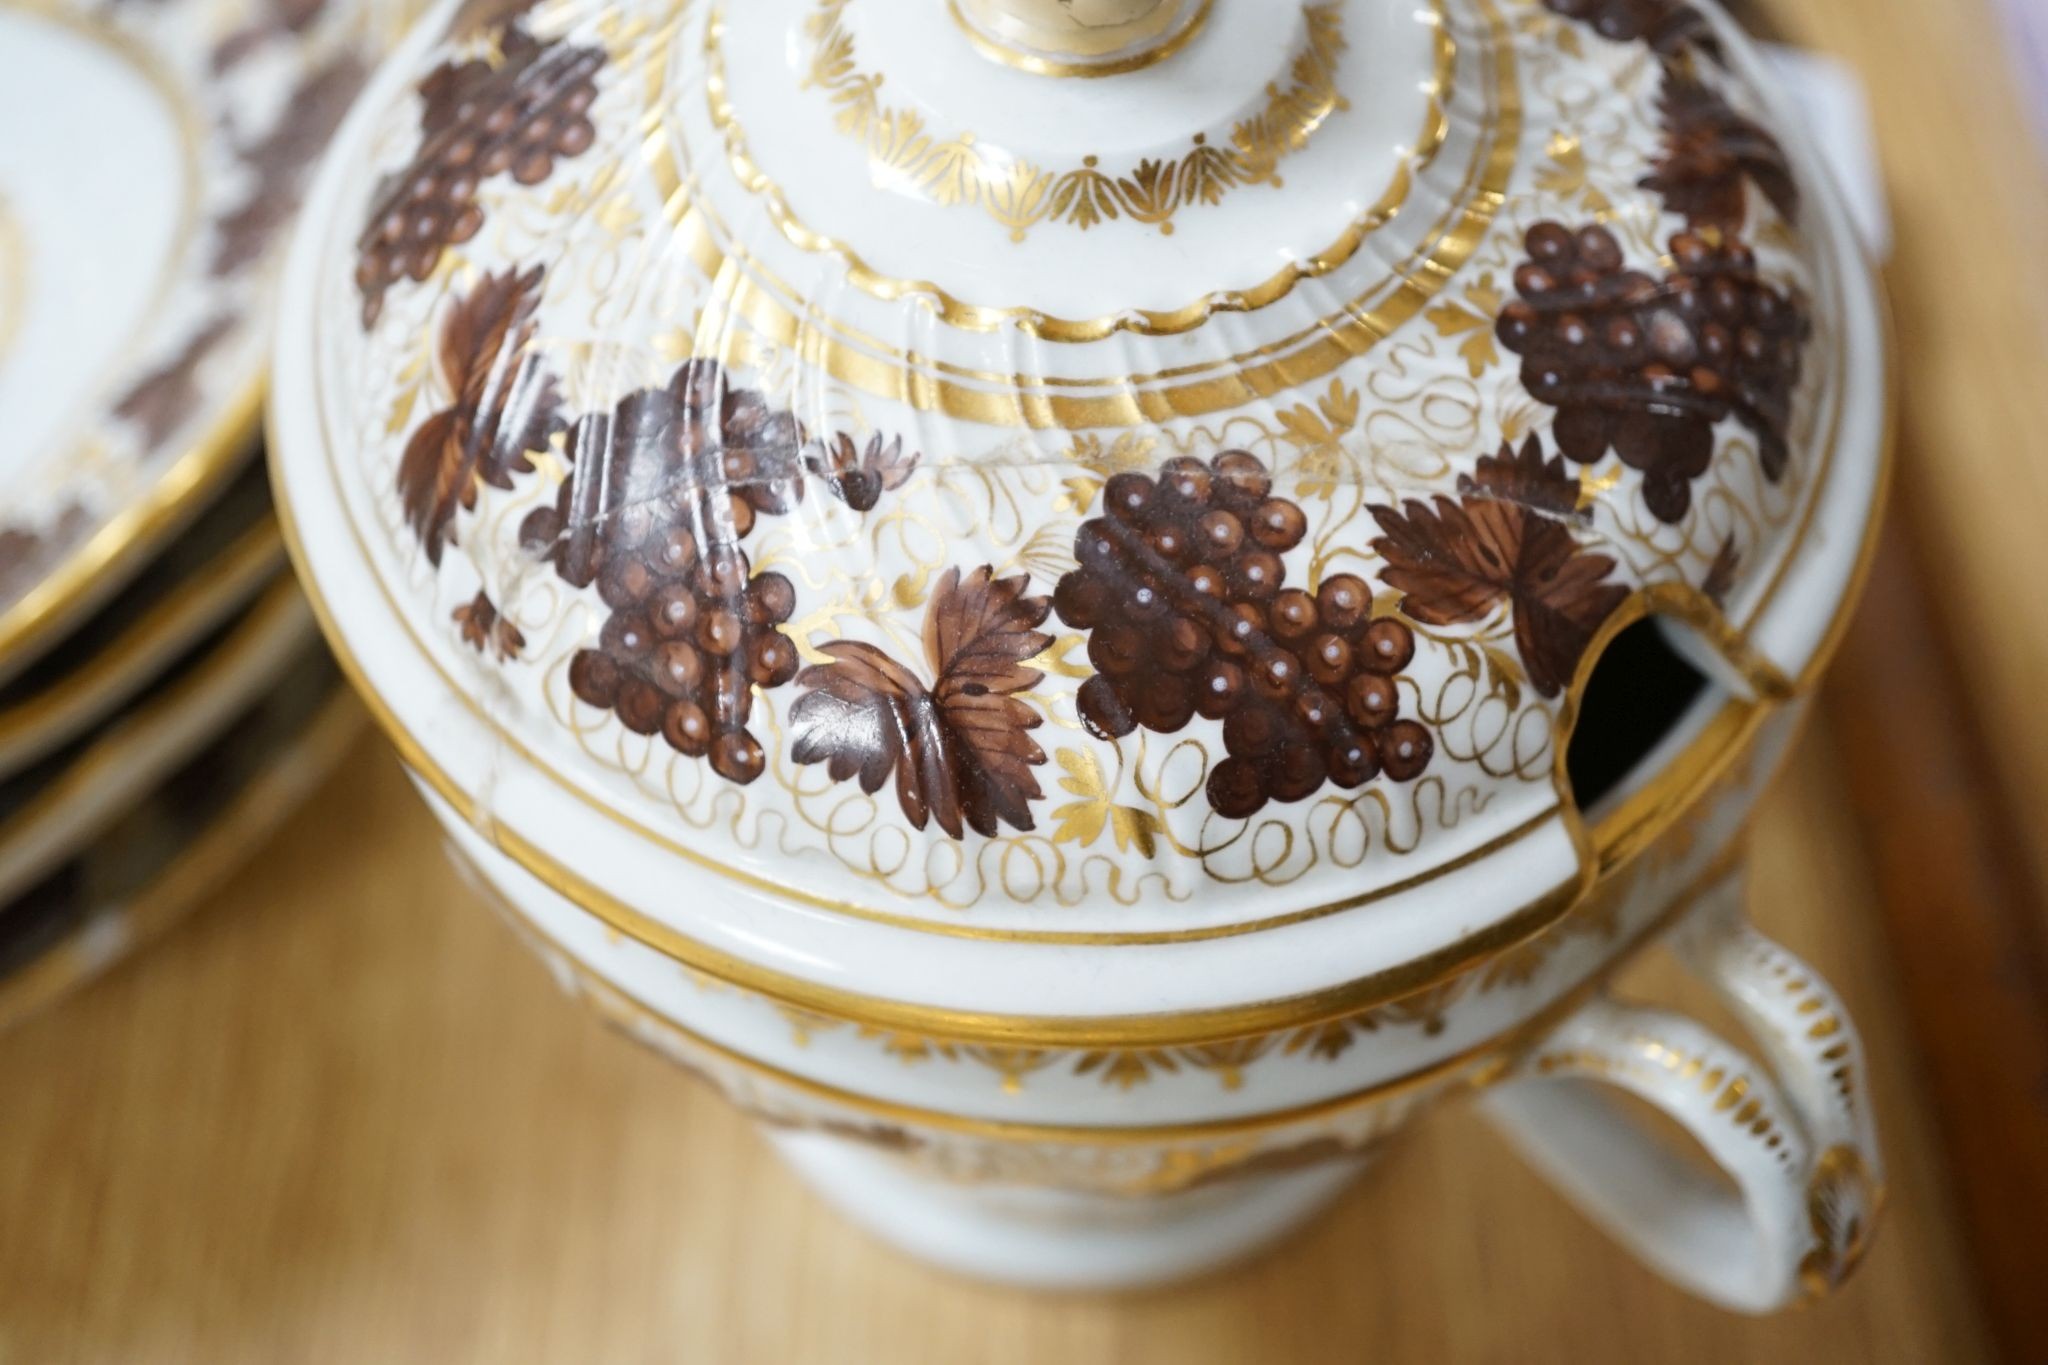 An early 19th century ten piece Chamberlain's Worcester porcelain part tea and dessert service